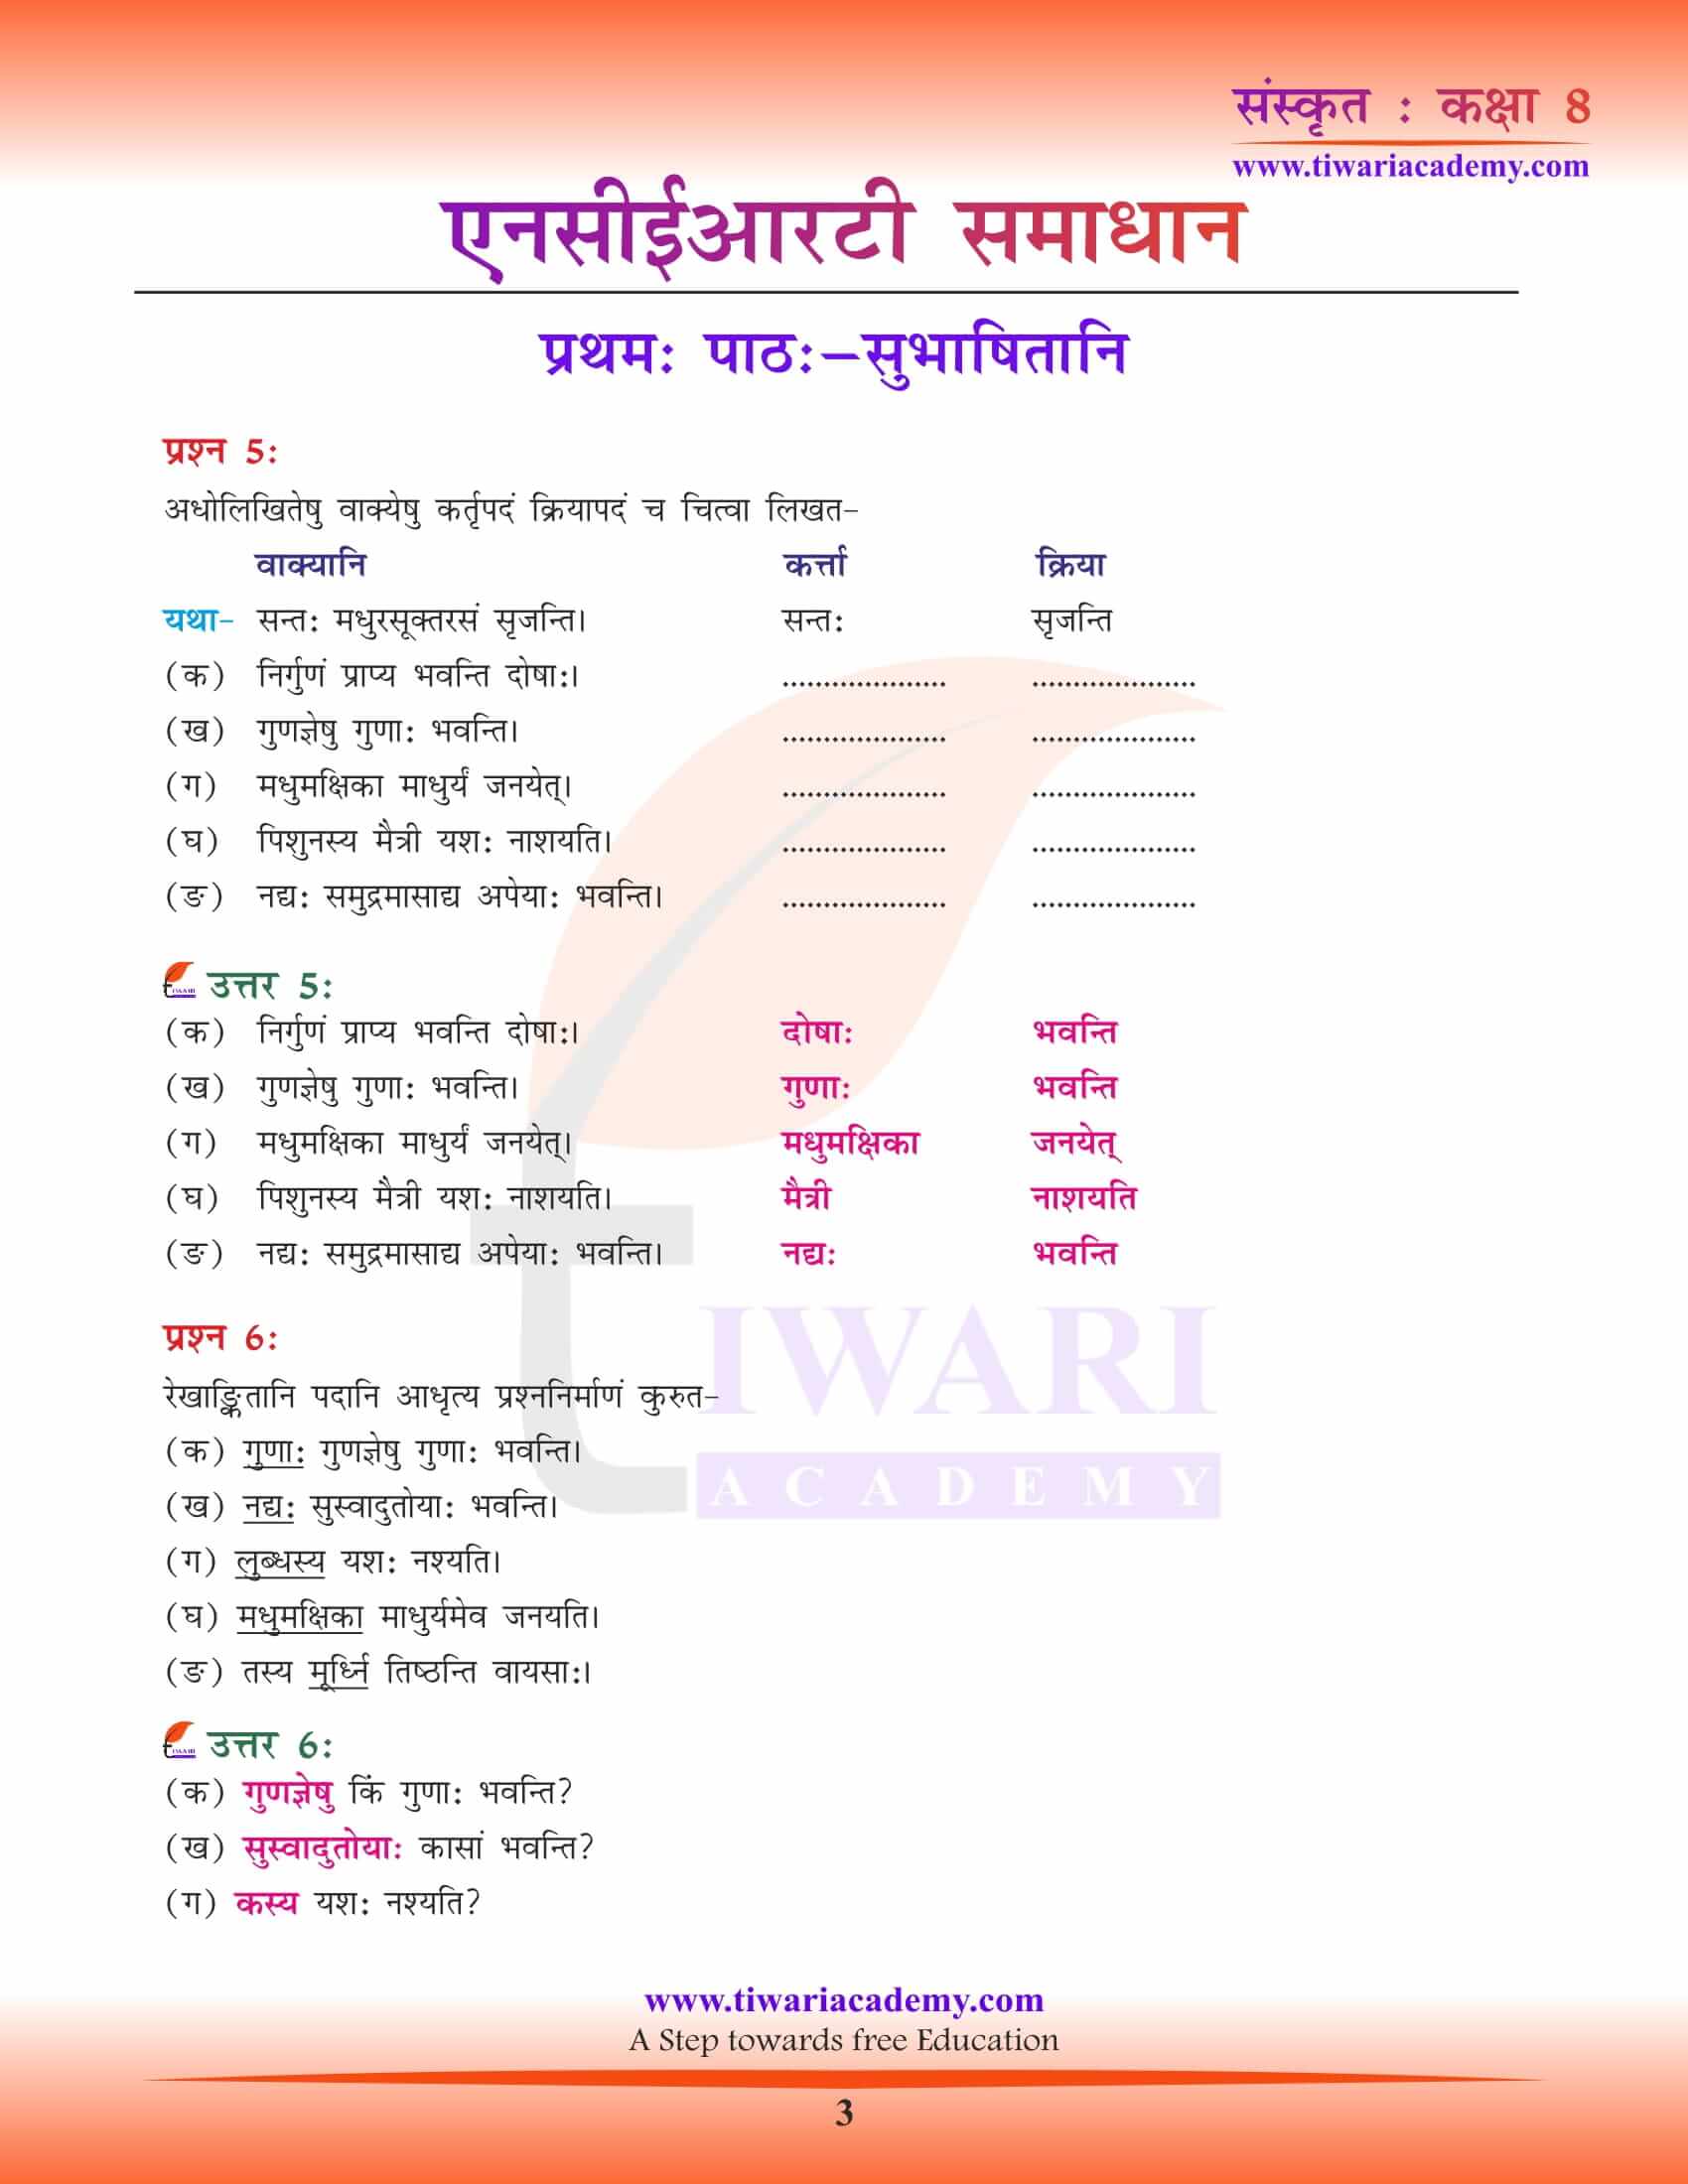 NCERT Solutions for Class 8 Sanskrit Chapter 1 free